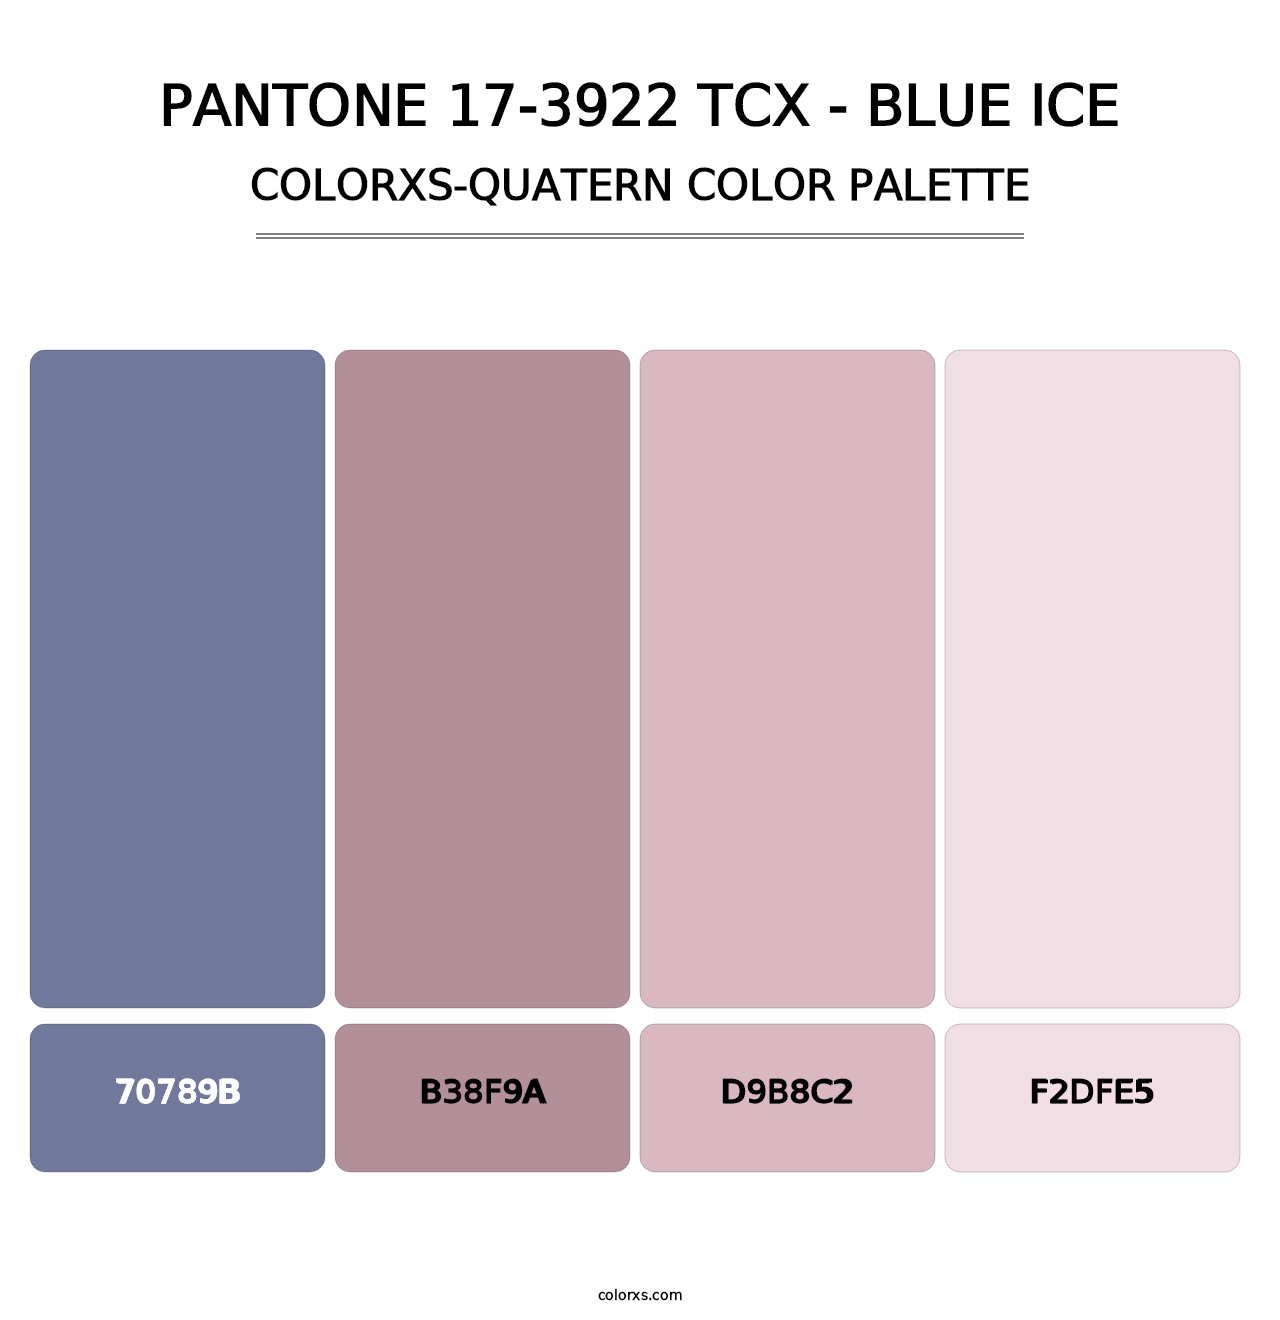 PANTONE 17-3922 TCX - Blue Ice - Colorxs Quatern Palette